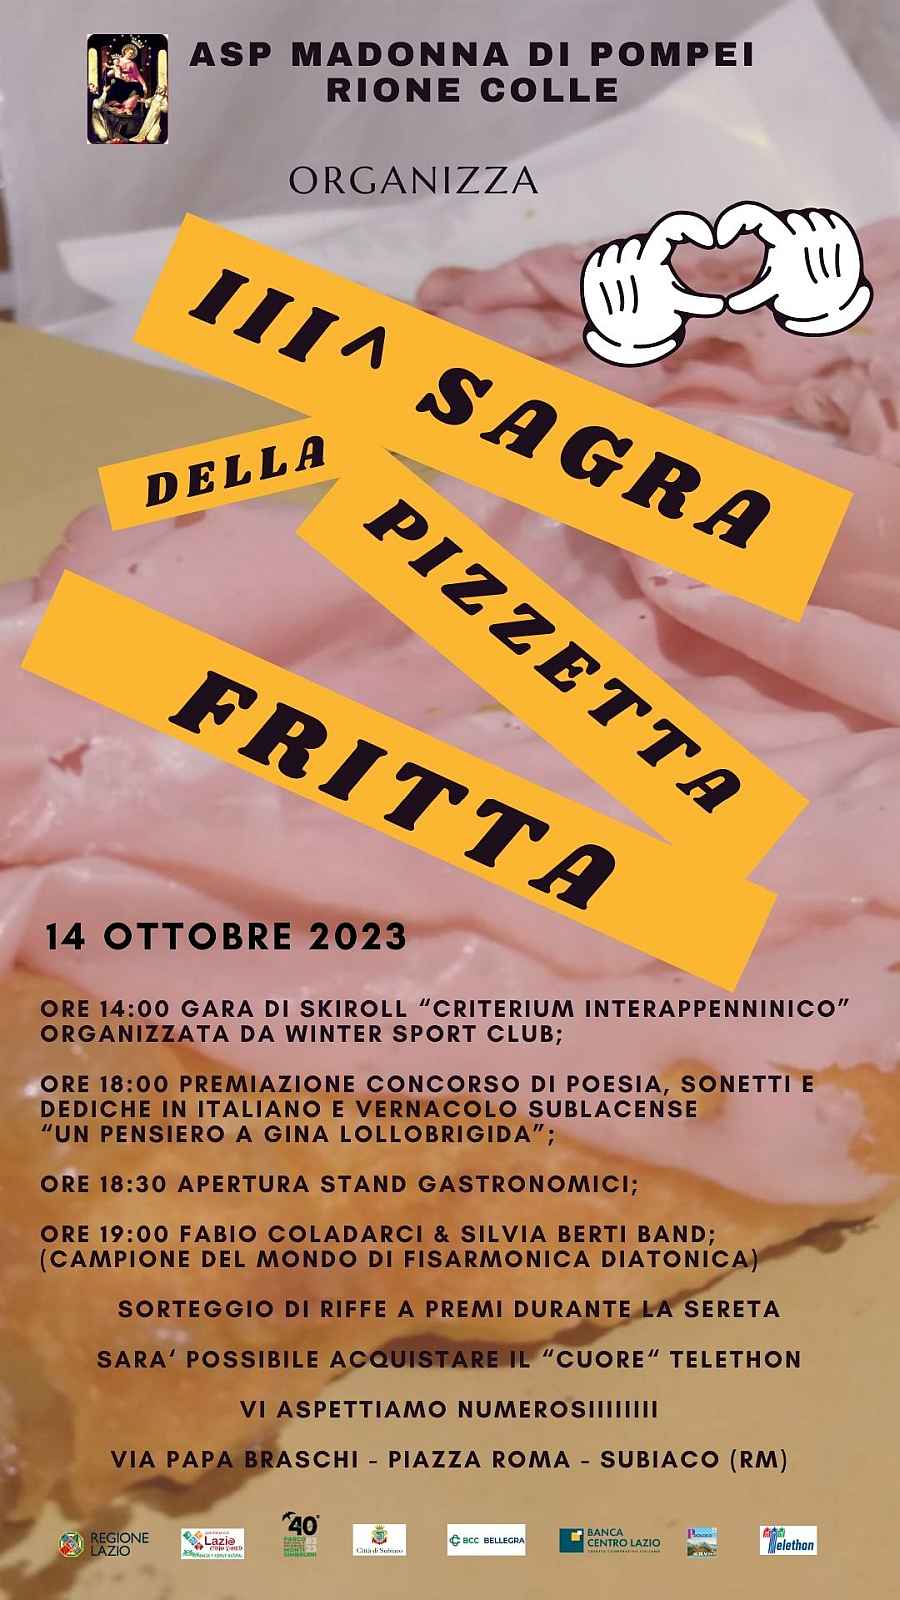 Subiaco (RM)
"Sagra delle Pizzette Fritte"
8-9 Ottobre 2022 
